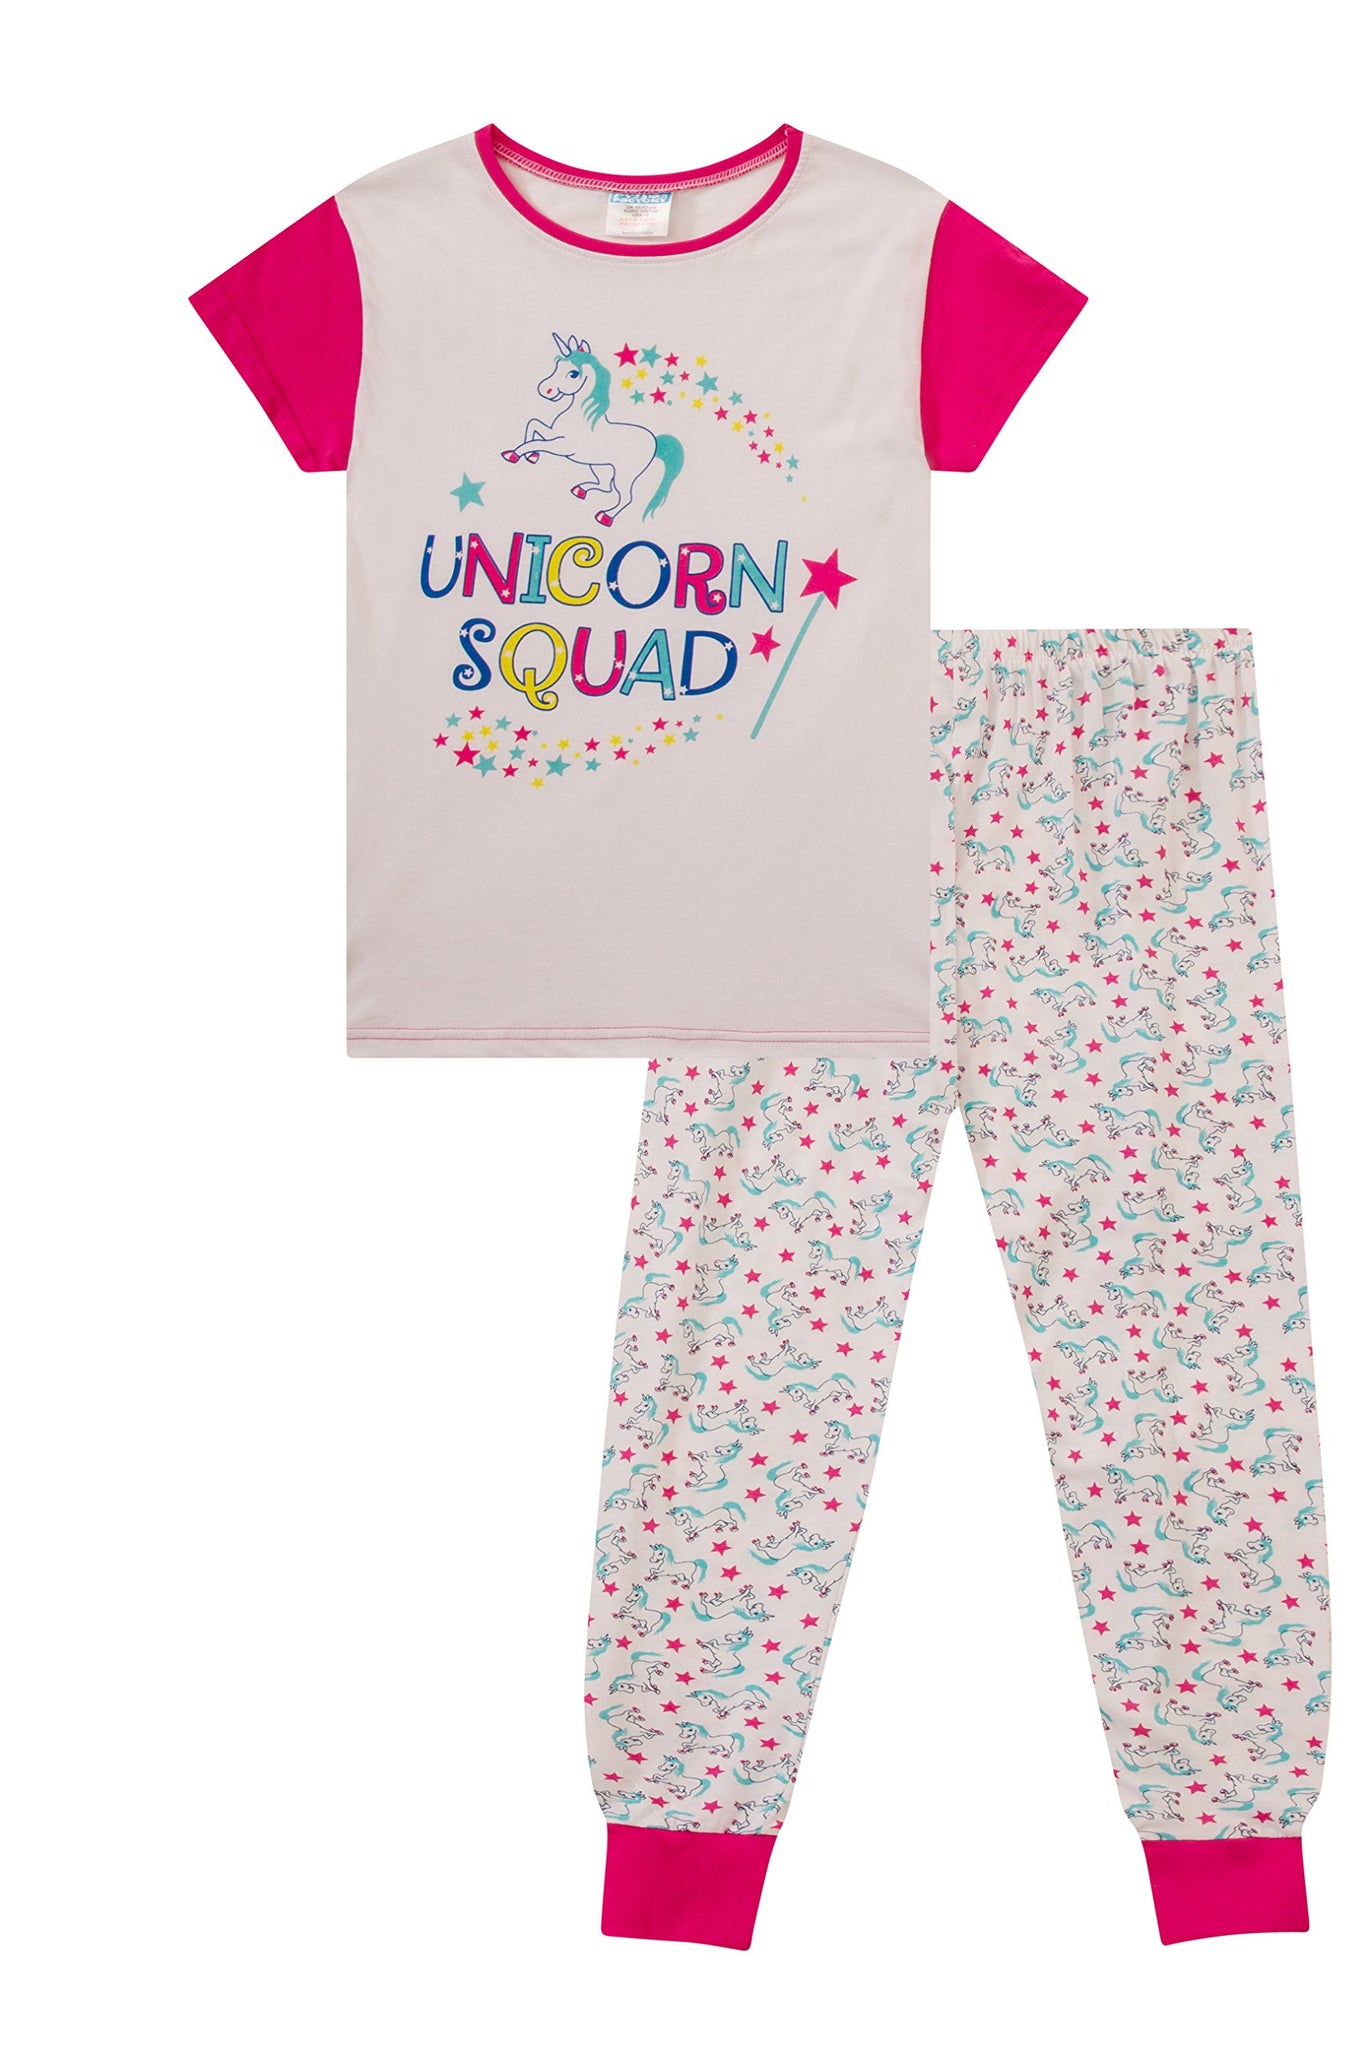 unicorn girls short sleeve pajama set